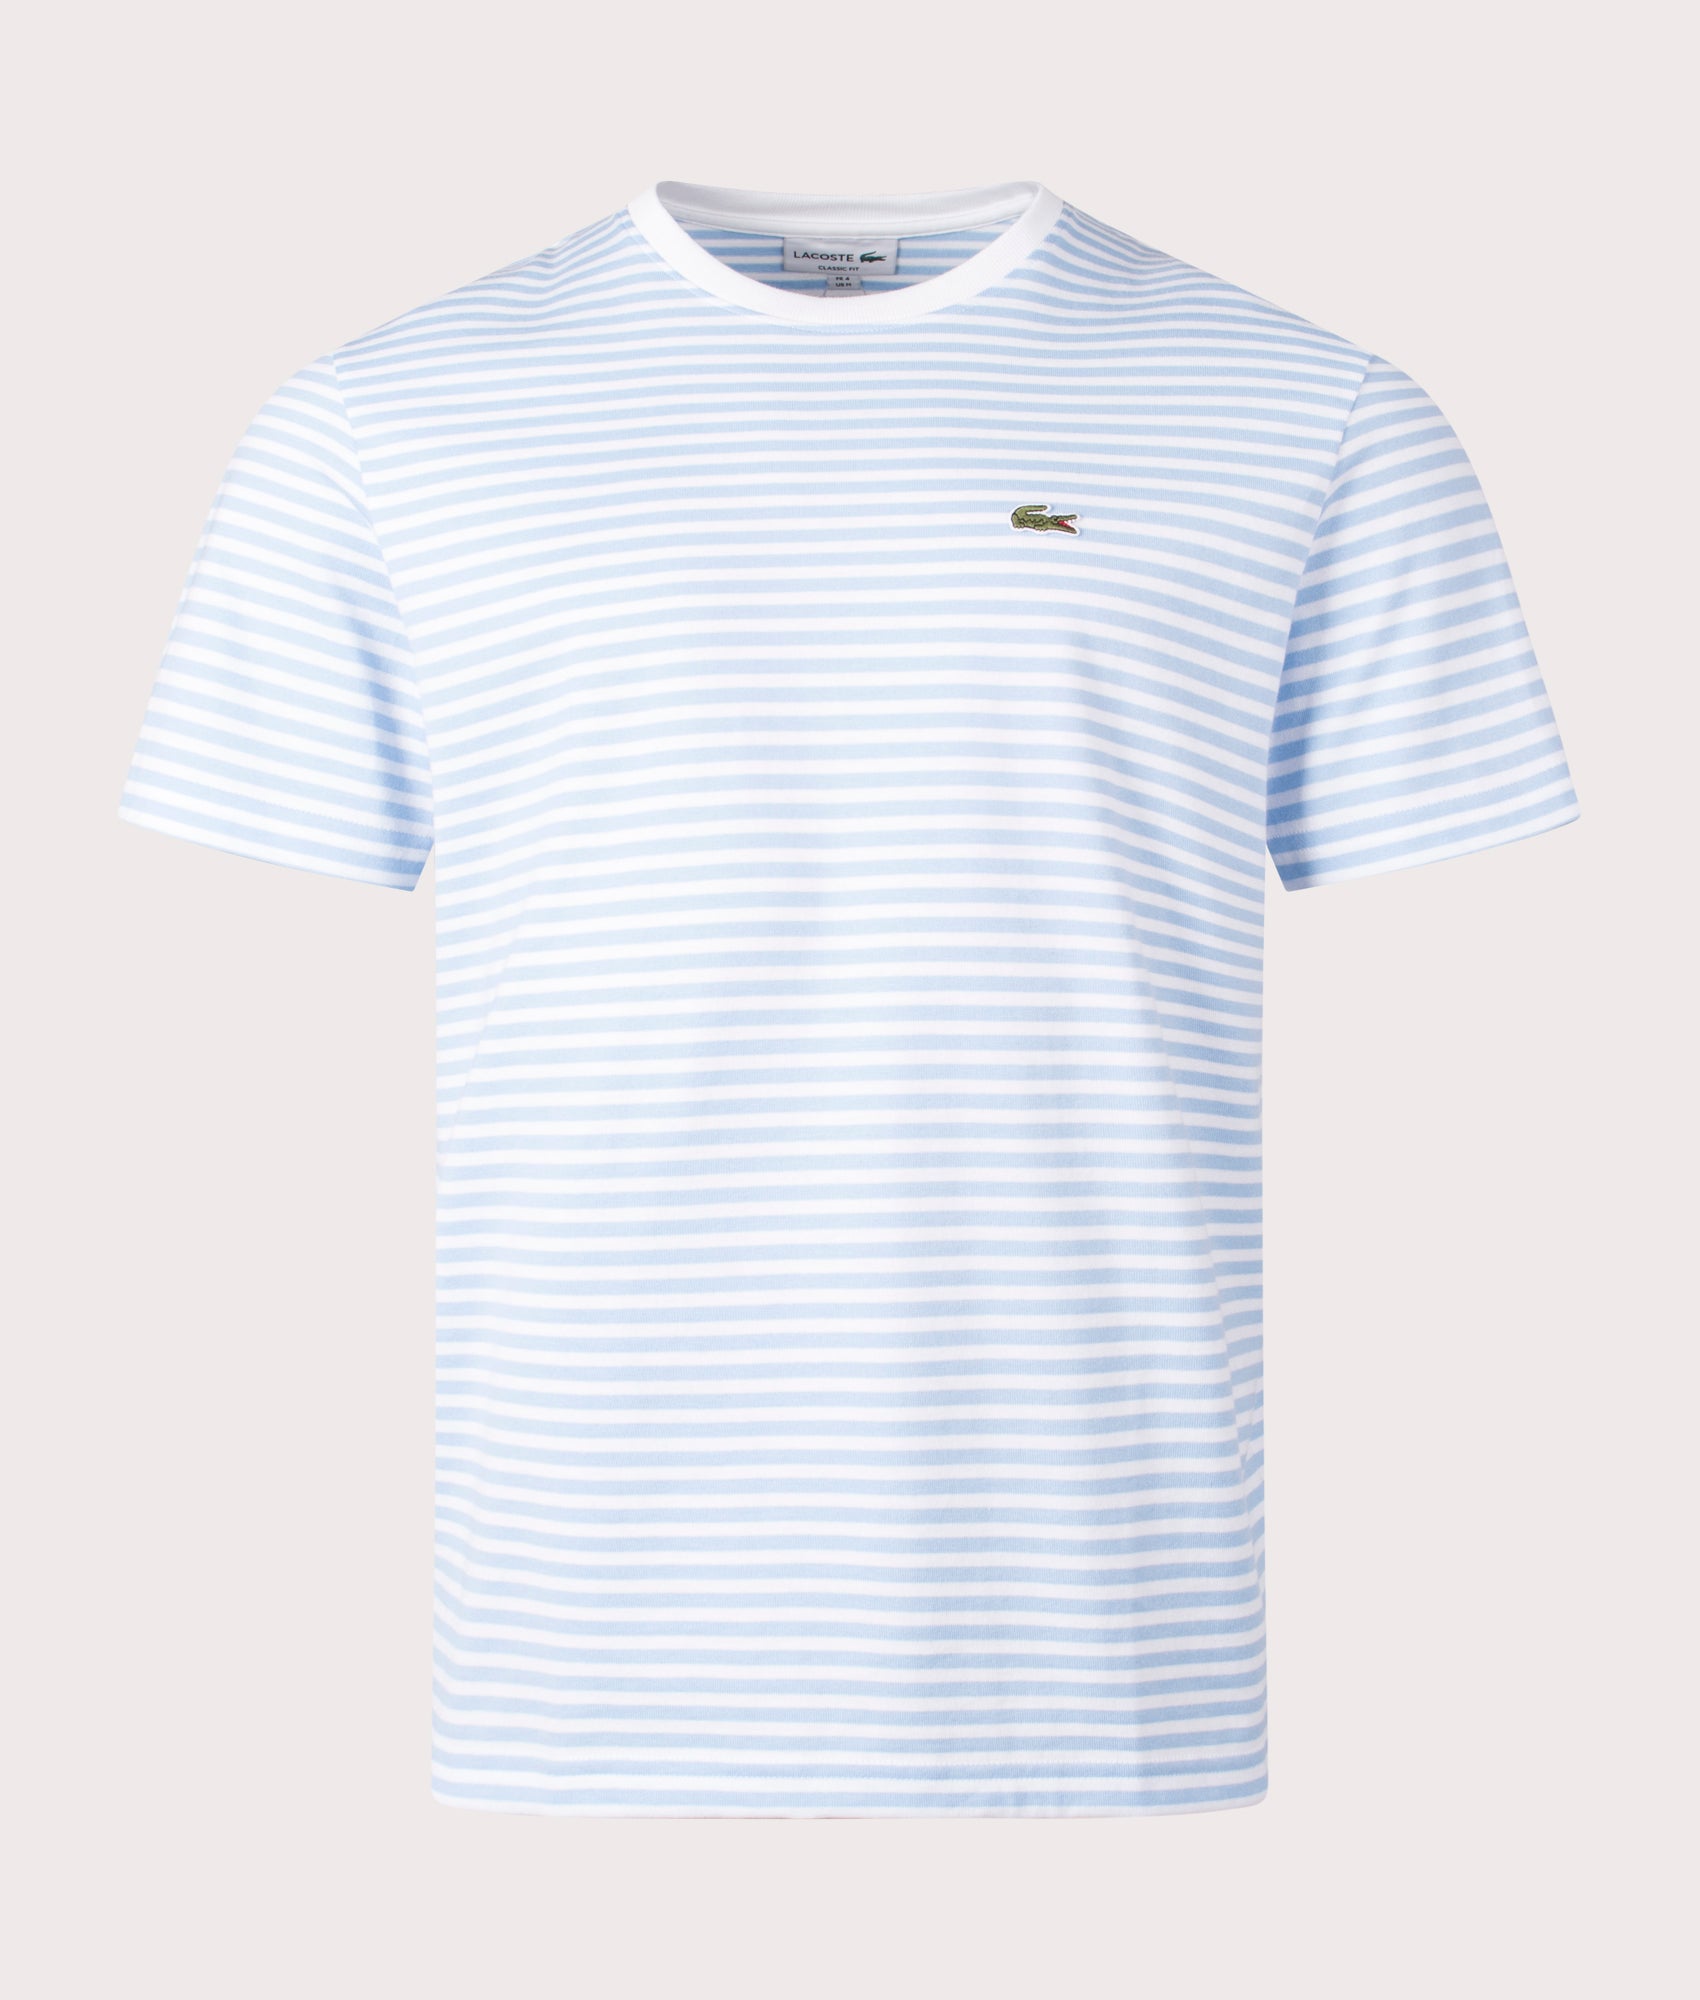 Lacoste Mens Heavy Cotton Striped T-Shirt - Colour: F6Z White/Overview - Size: 5/L